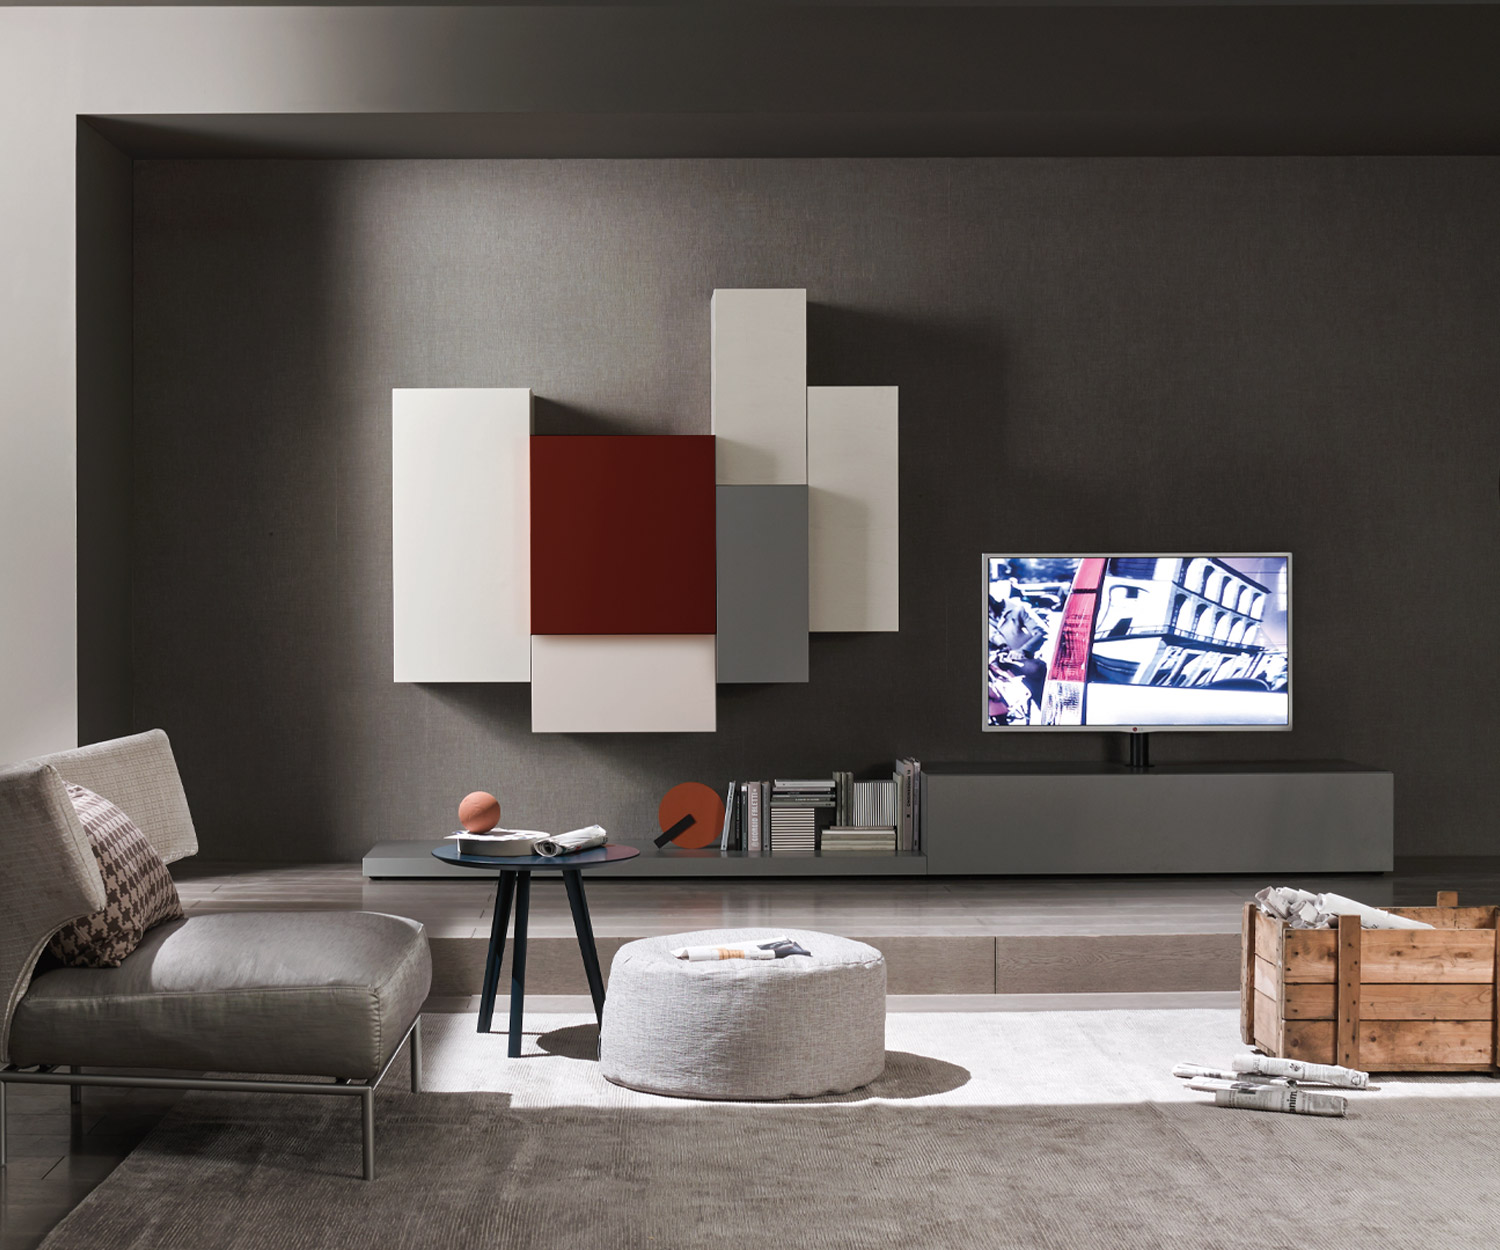 Exclusief Livitalia Design wandmeubel C49 met TV-kolombevestiging